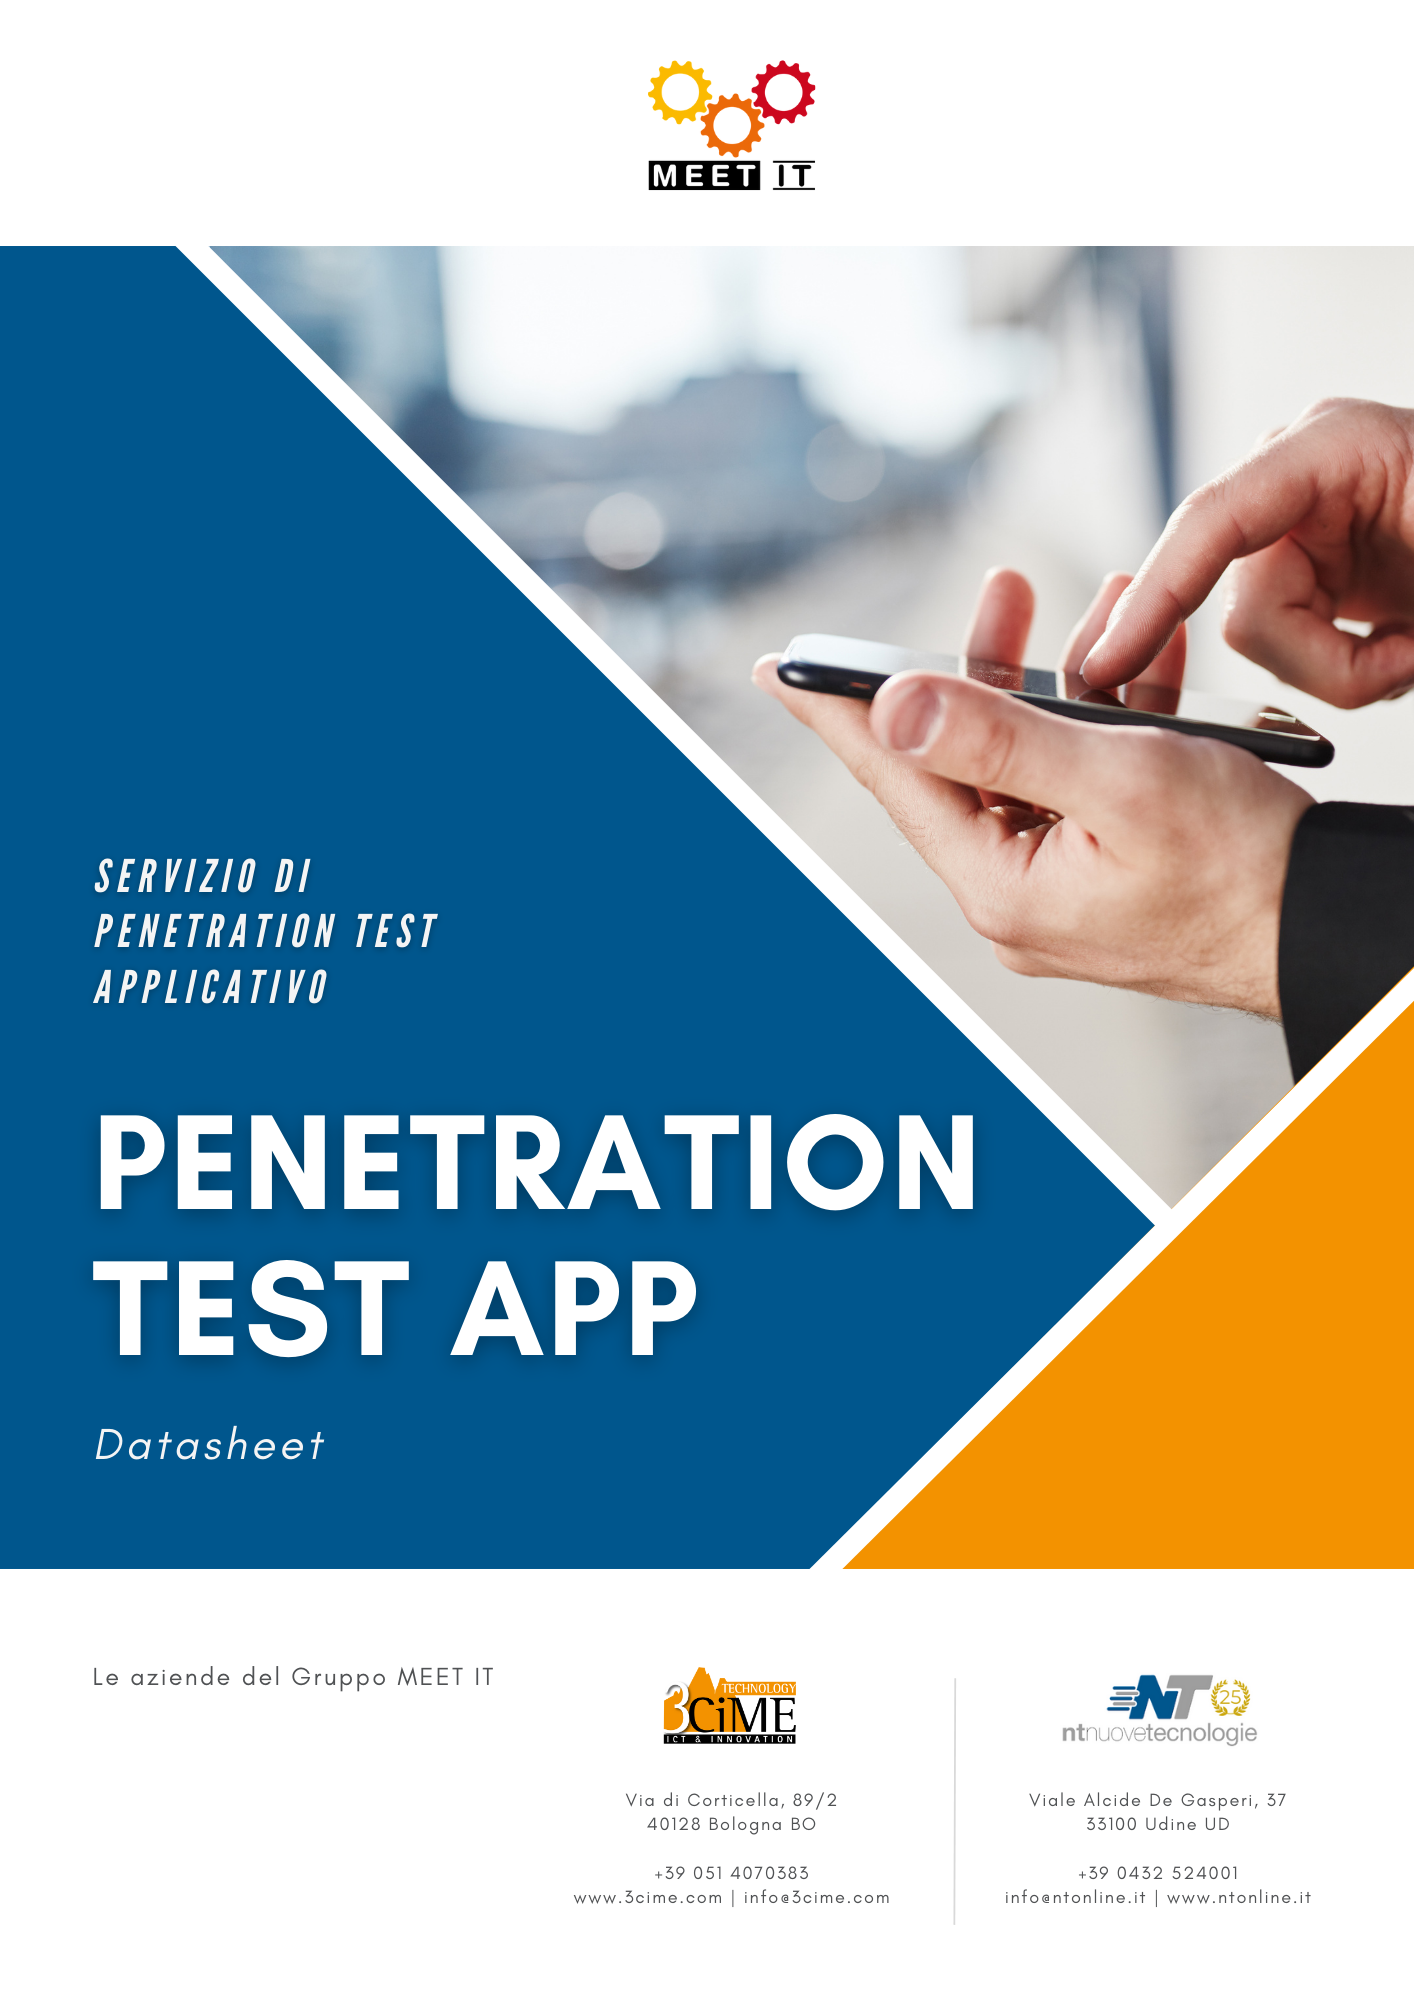 Datasheet Penetration Test App - MEET IT